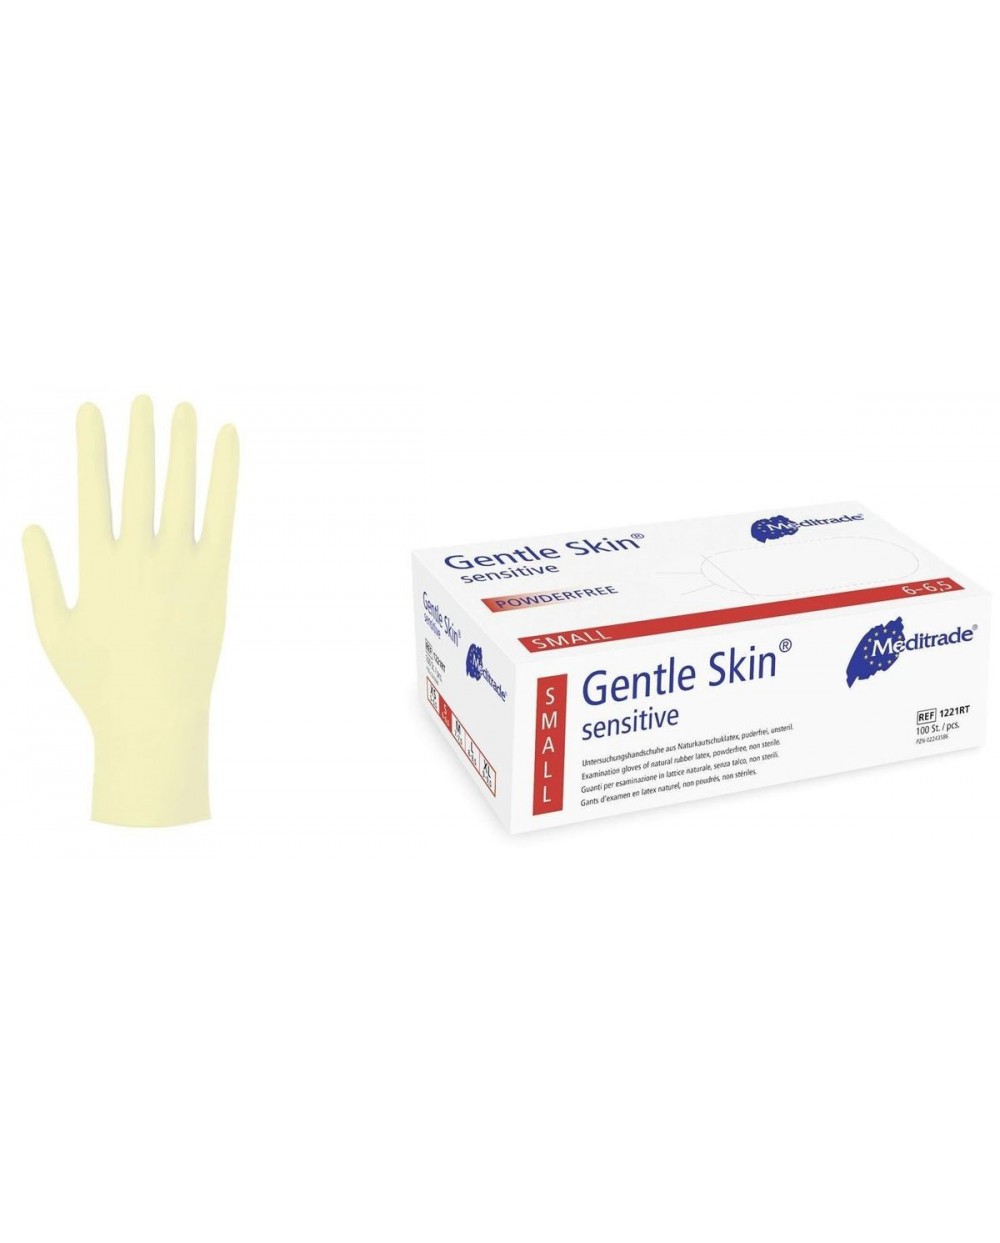 Gentle Skin sensitive - 1